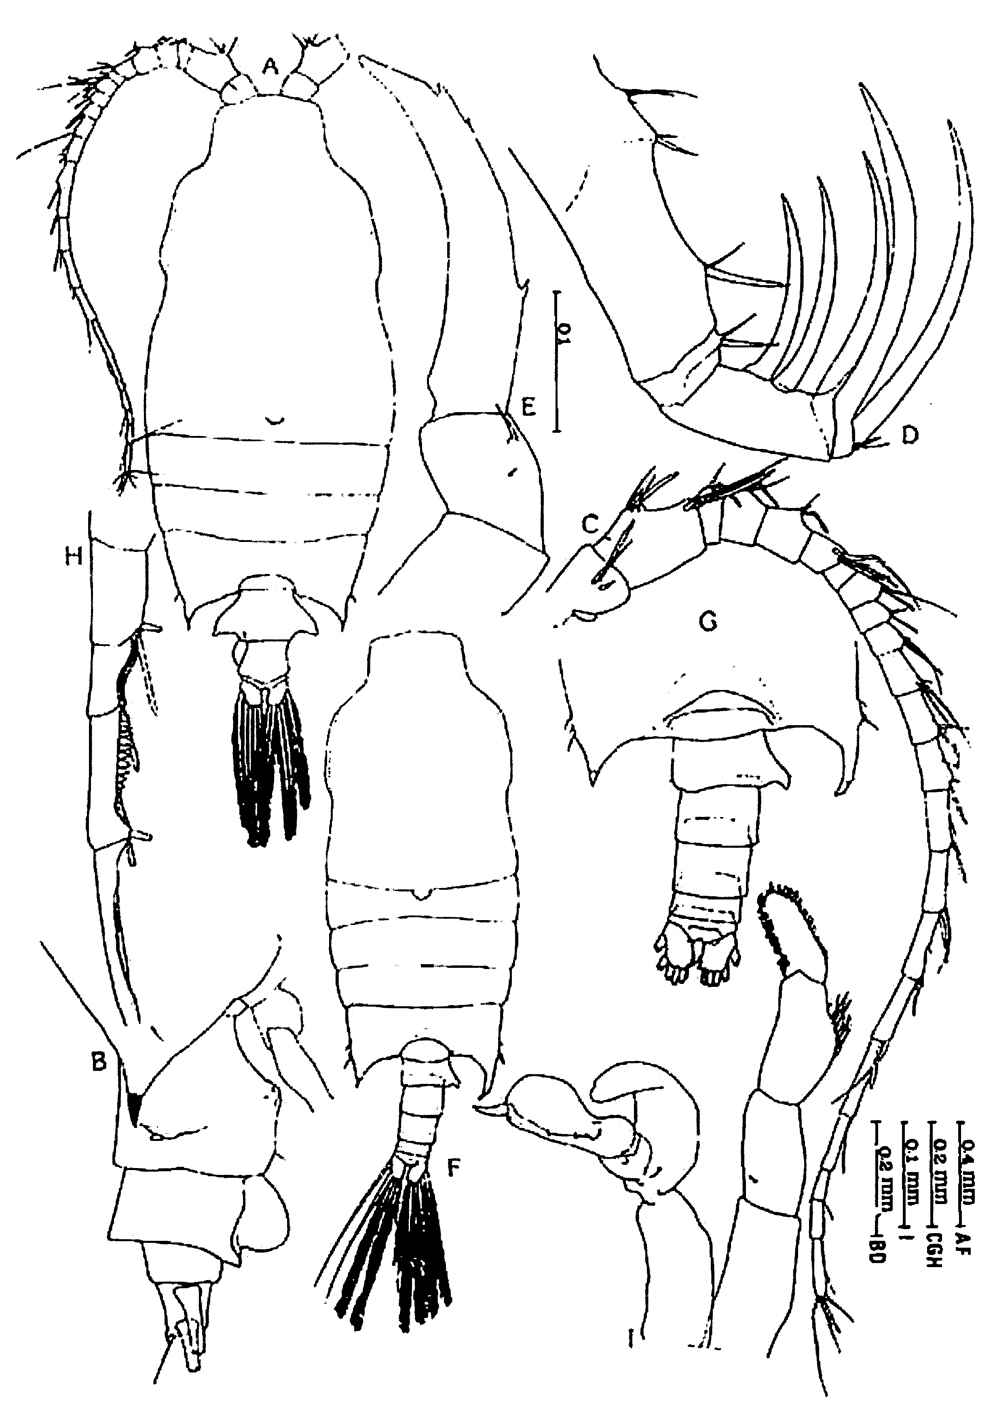 Espèce Candacia bipinnata - Planche 26 de figures morphologiques